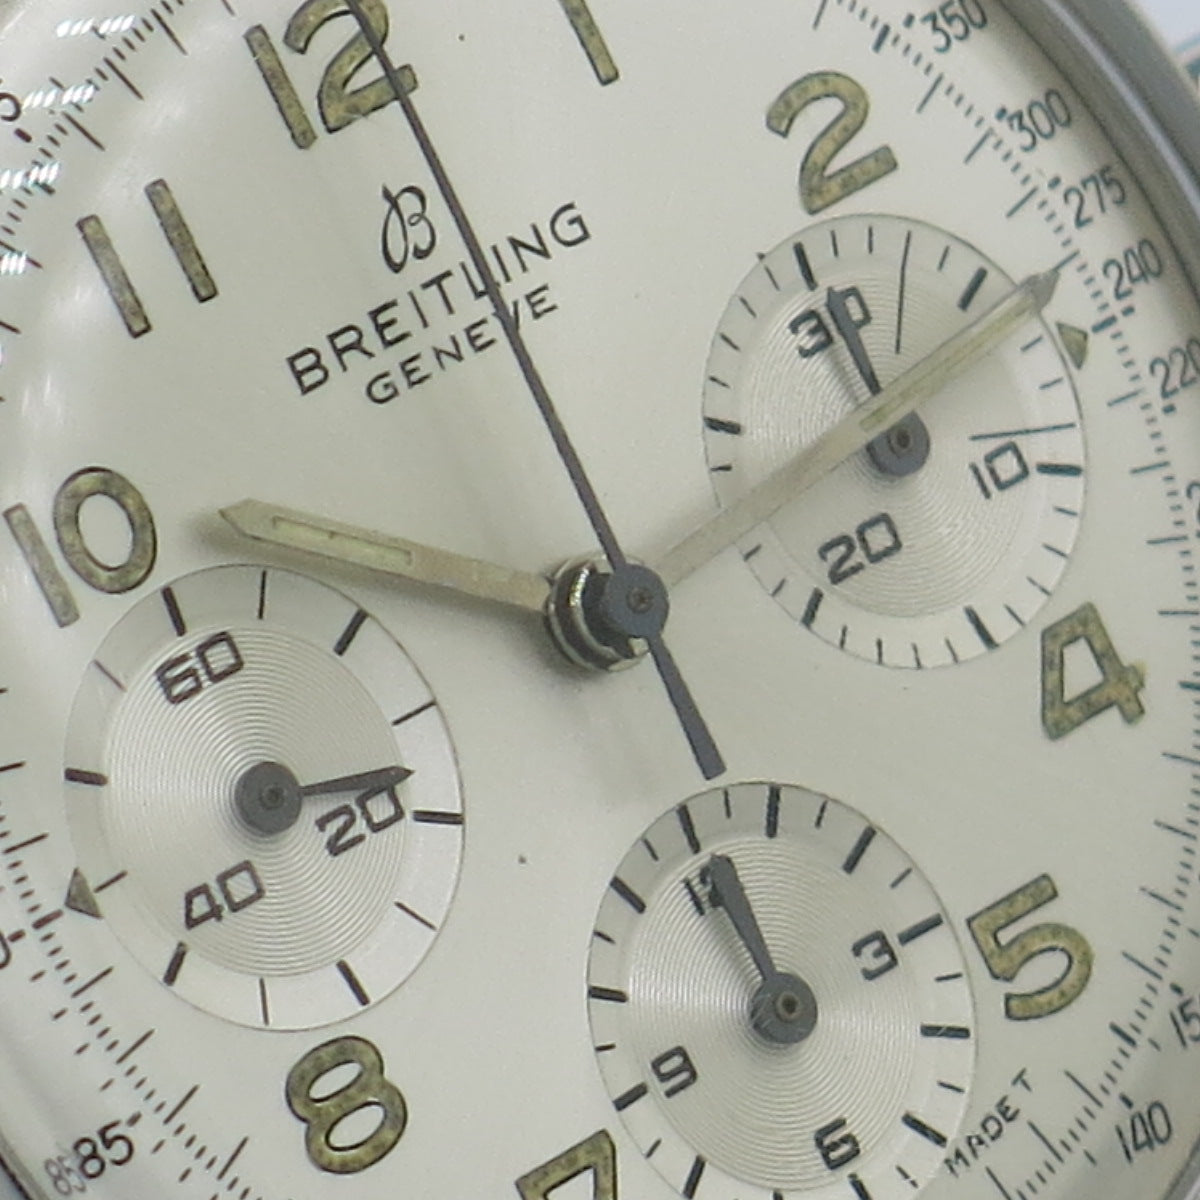 Breitling chrono